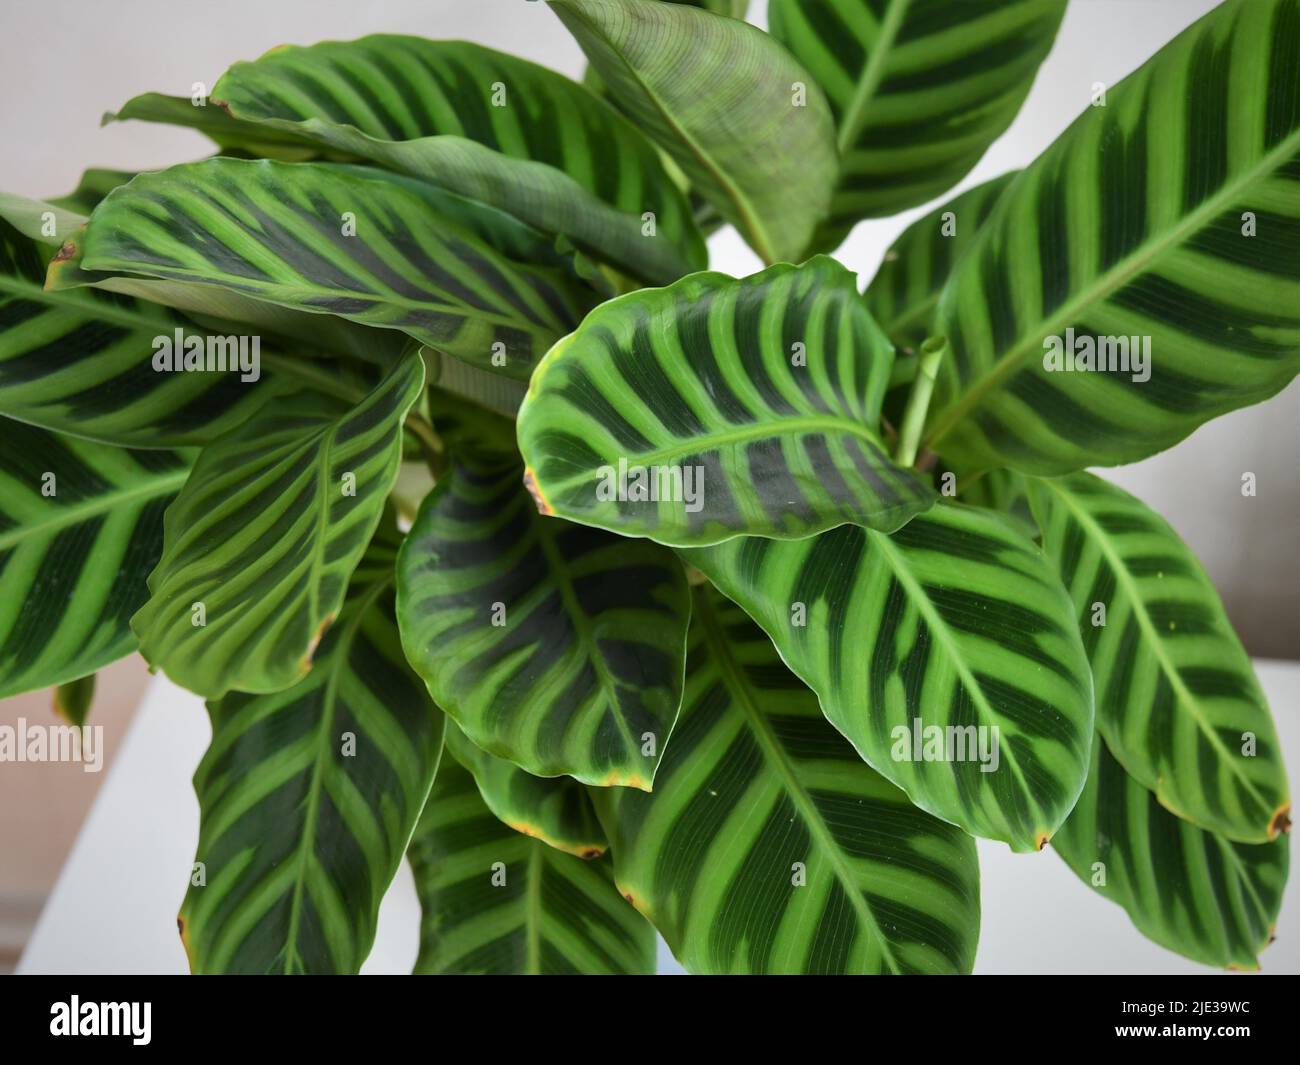 Nahaufnahme der Blätter von Calathea zebrina (die Zebrapflanze). Die Blätter sind mit zwei Grüntönen gestreift. Pflanze isoliert auf weißem Hintergrund. Stockfoto